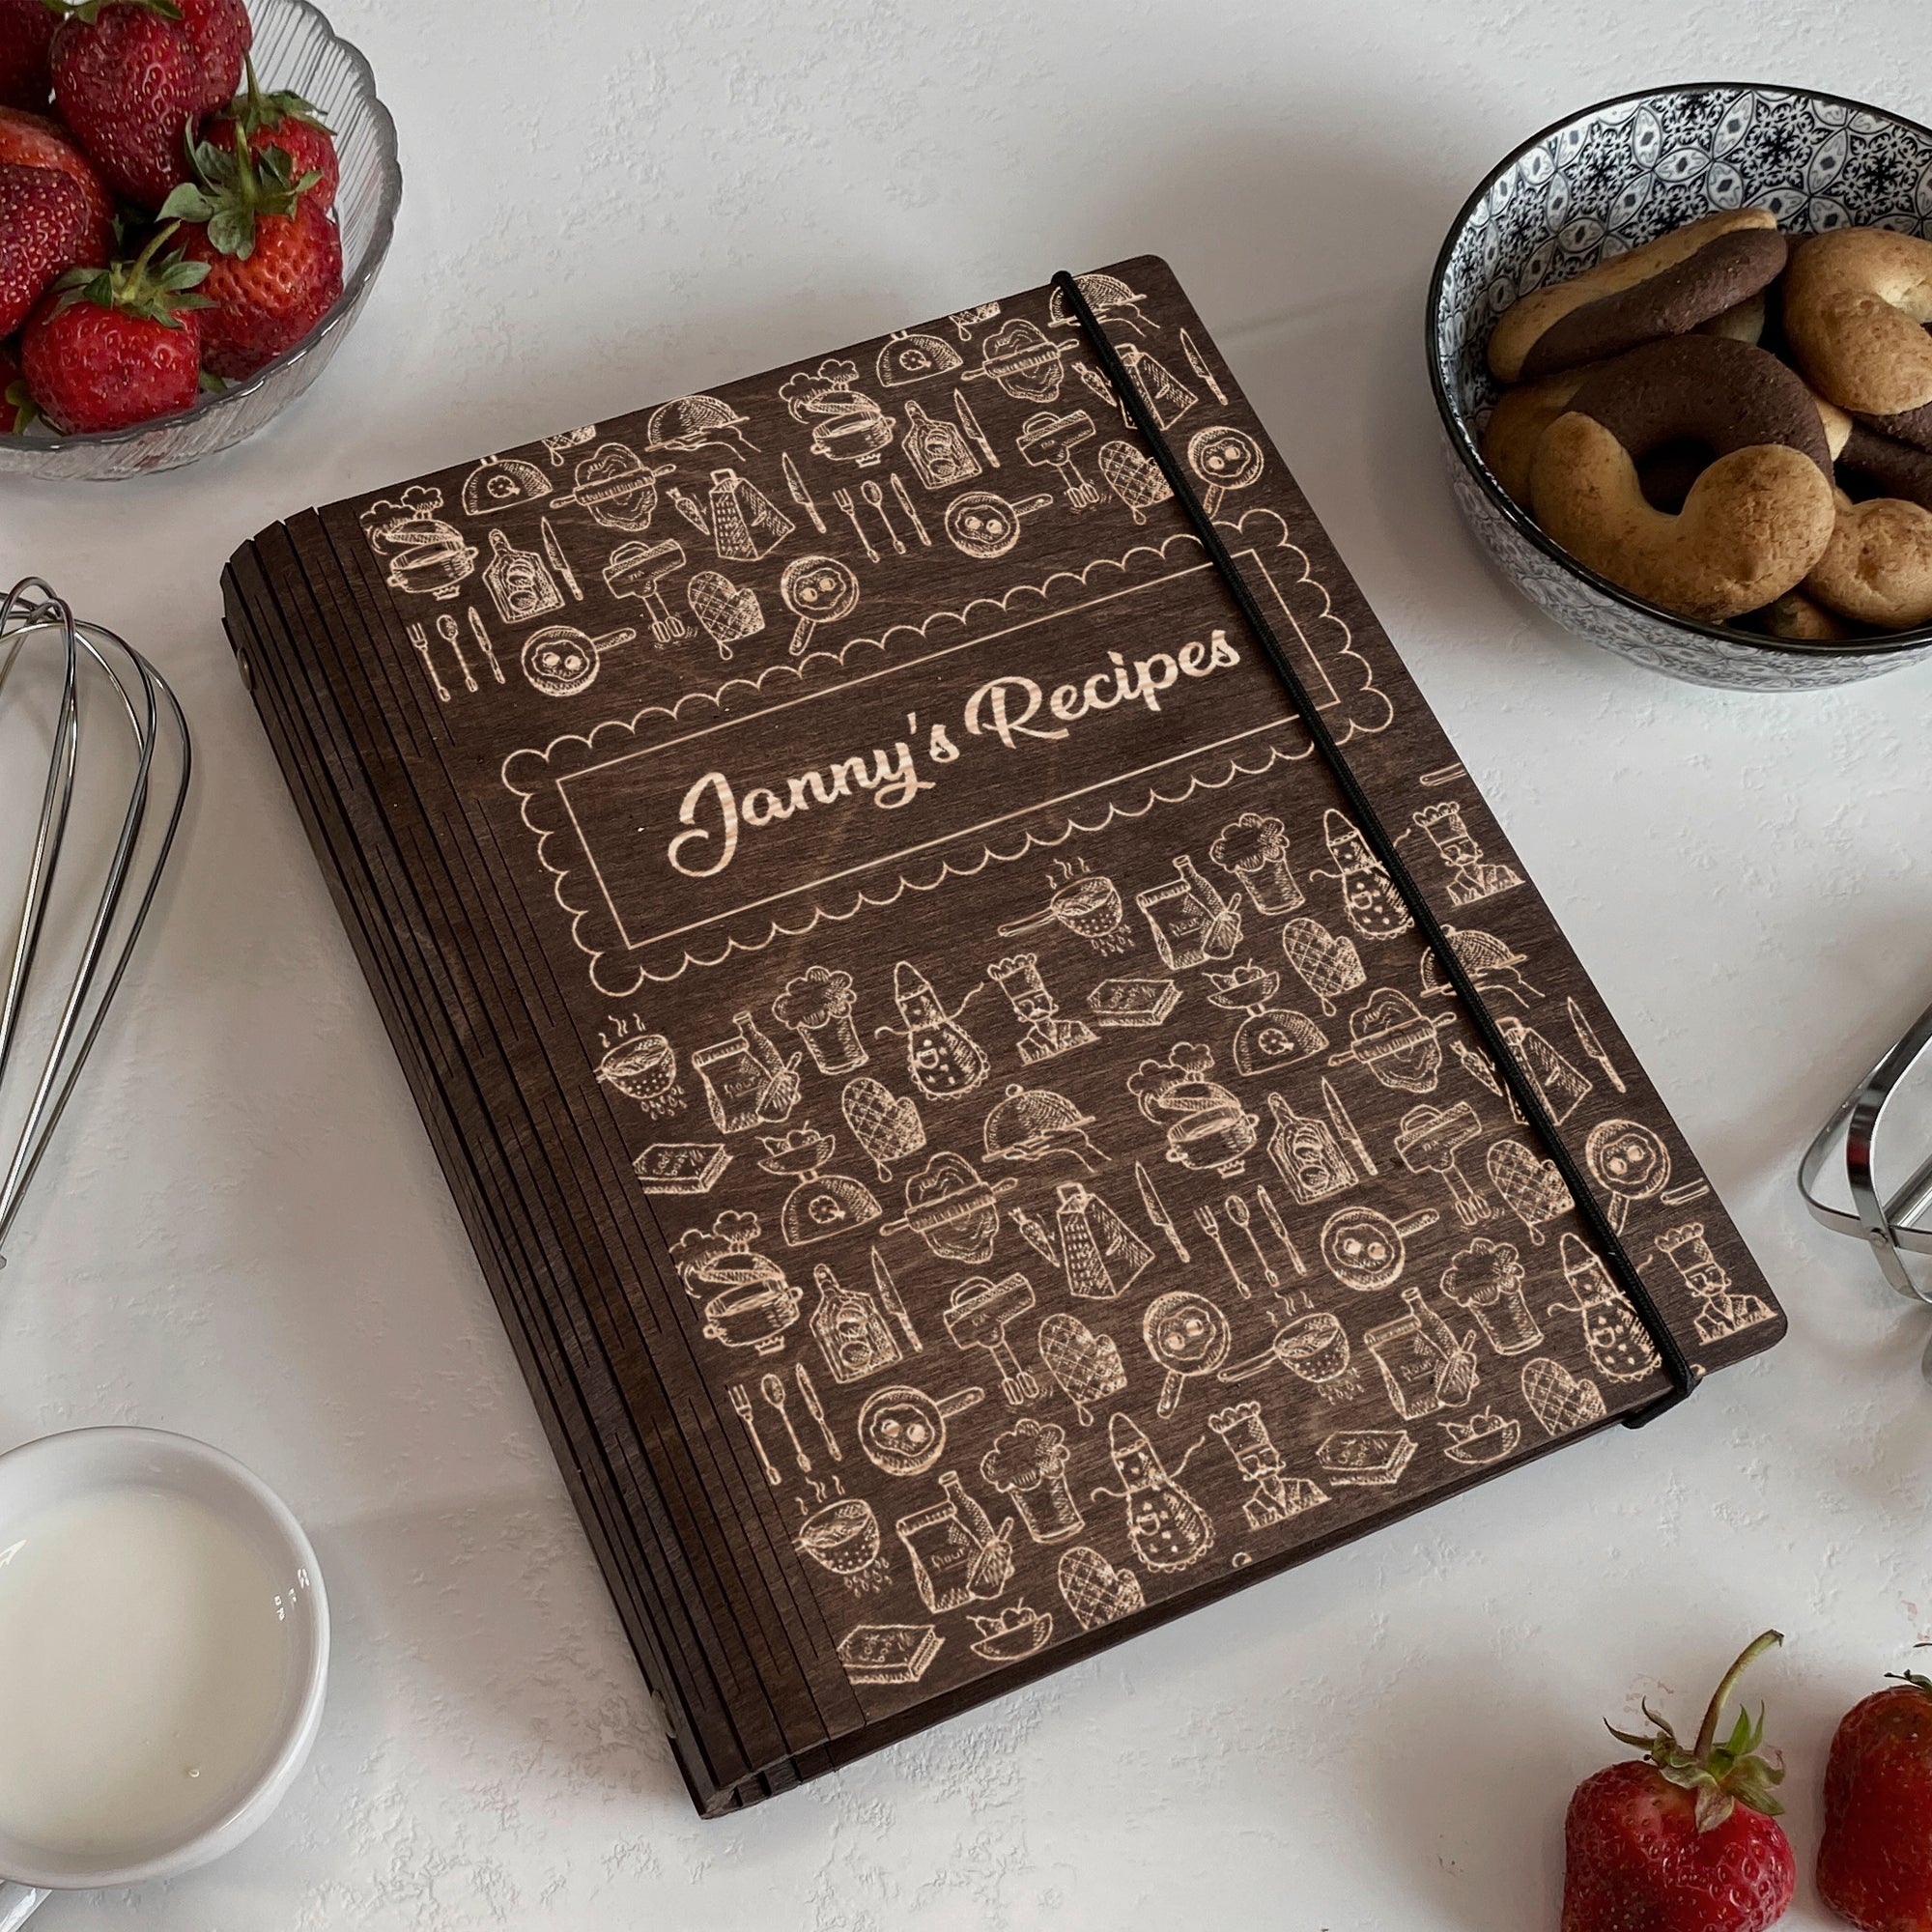 Family Home Recipes Book Free custom engraving